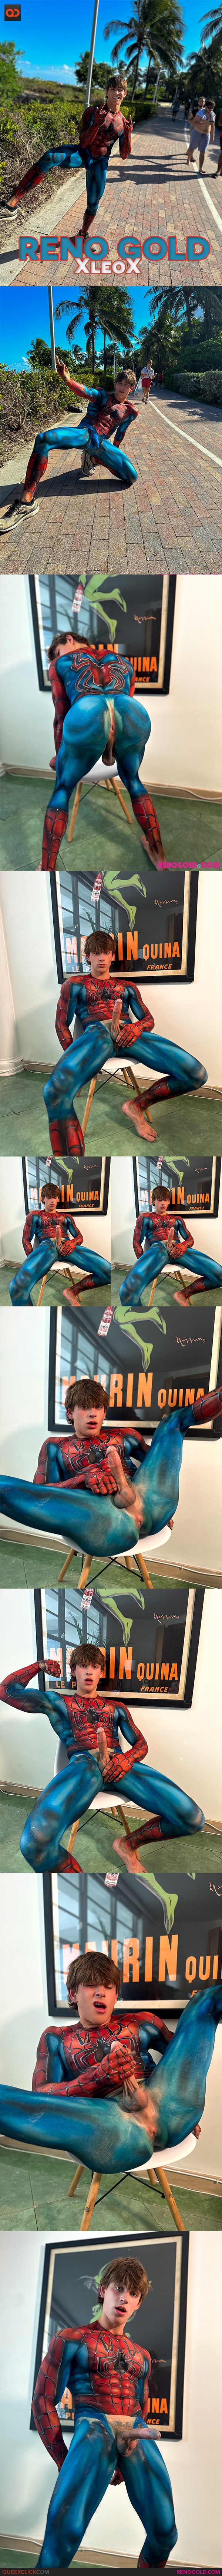 Reno Gold: Spider-man Spunk